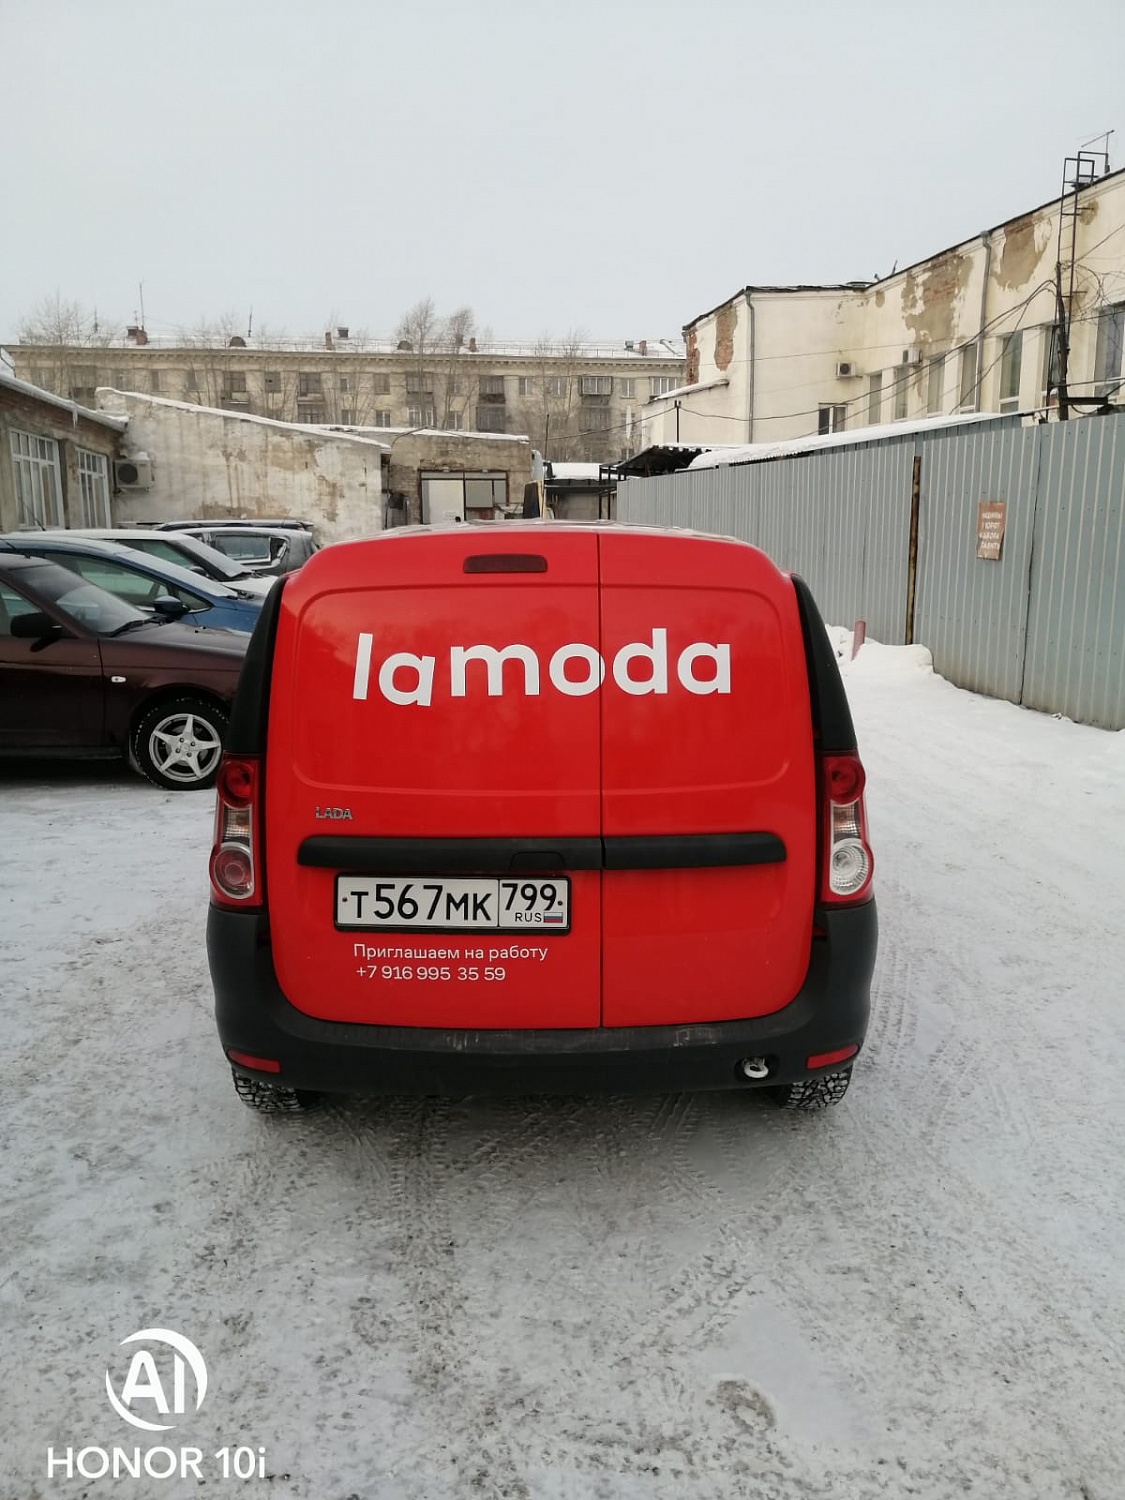 "Ламода" брендирование автотранспорта